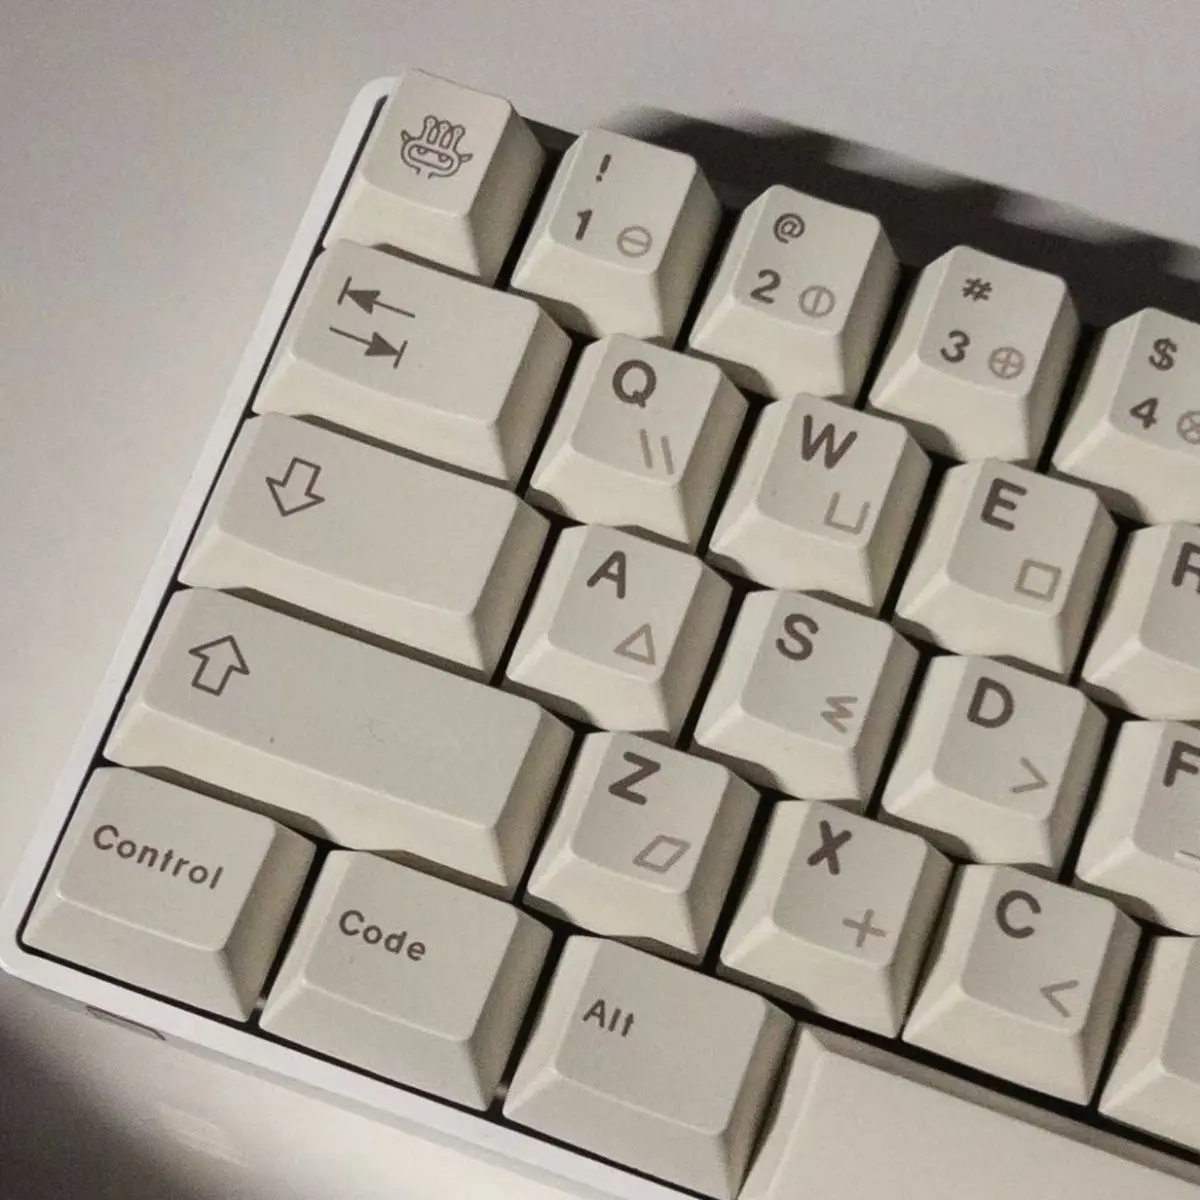 

Колпачки для клавиш Cherry Profile PBT с сублимационной печатью, 144 клавиш, милый аниме колпачок для механической клавиатуры MX с переключателями «сделай сам» на заказ